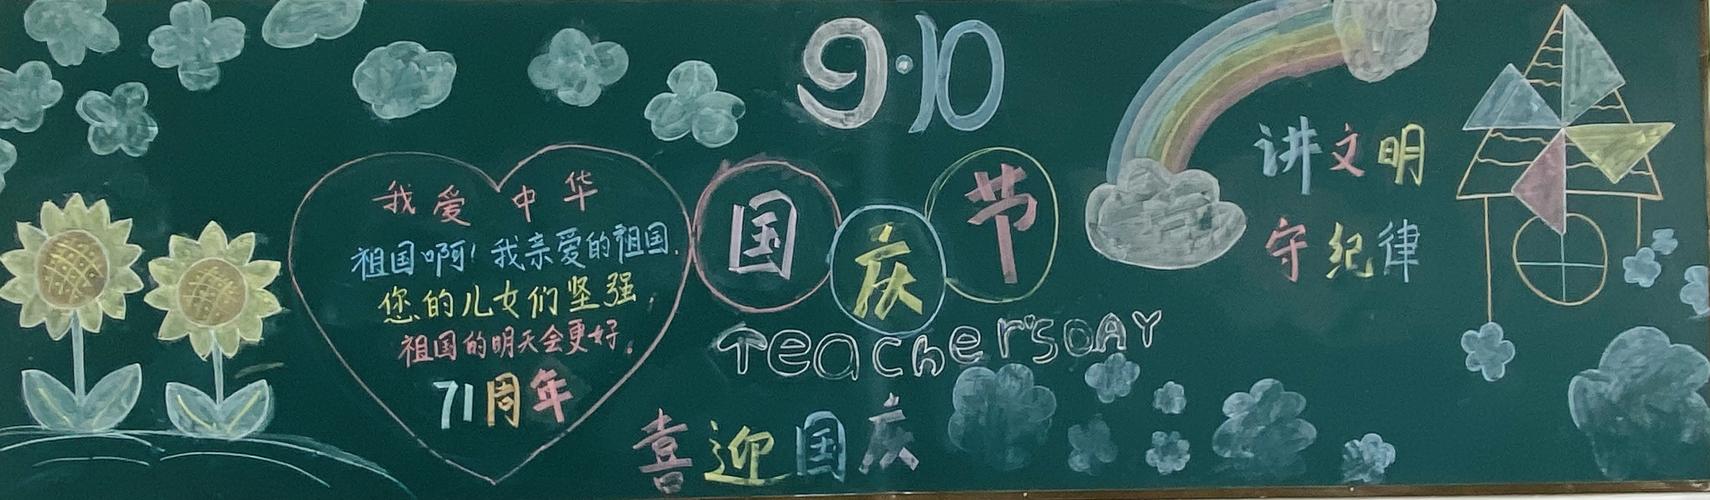 各班级集思广益发挥自己的特长制作出一幅幅精美的黑板报作品 中国